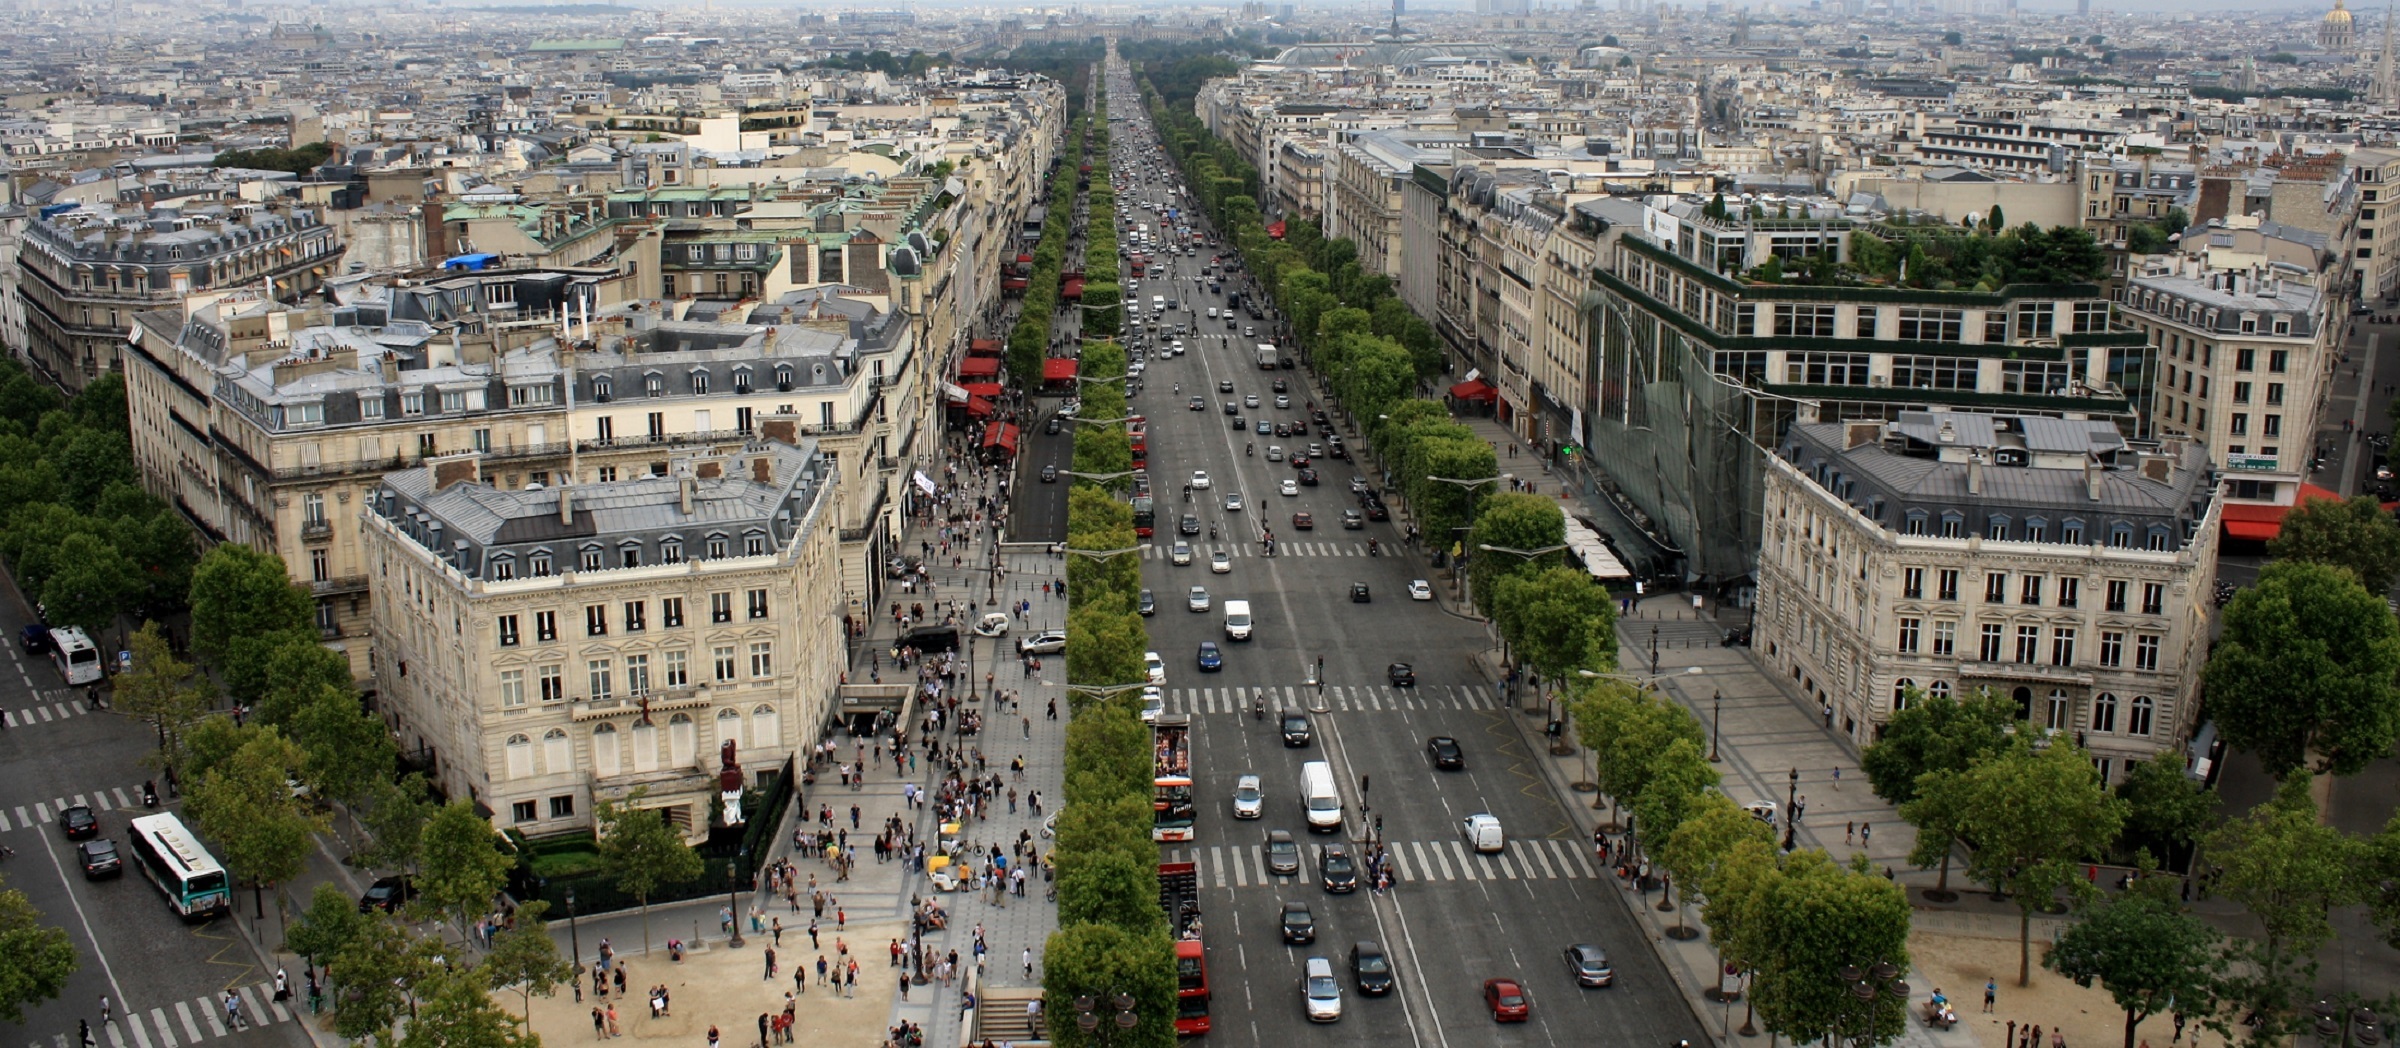 Las calles más famosas y espectaculares del mundo Champs elysee